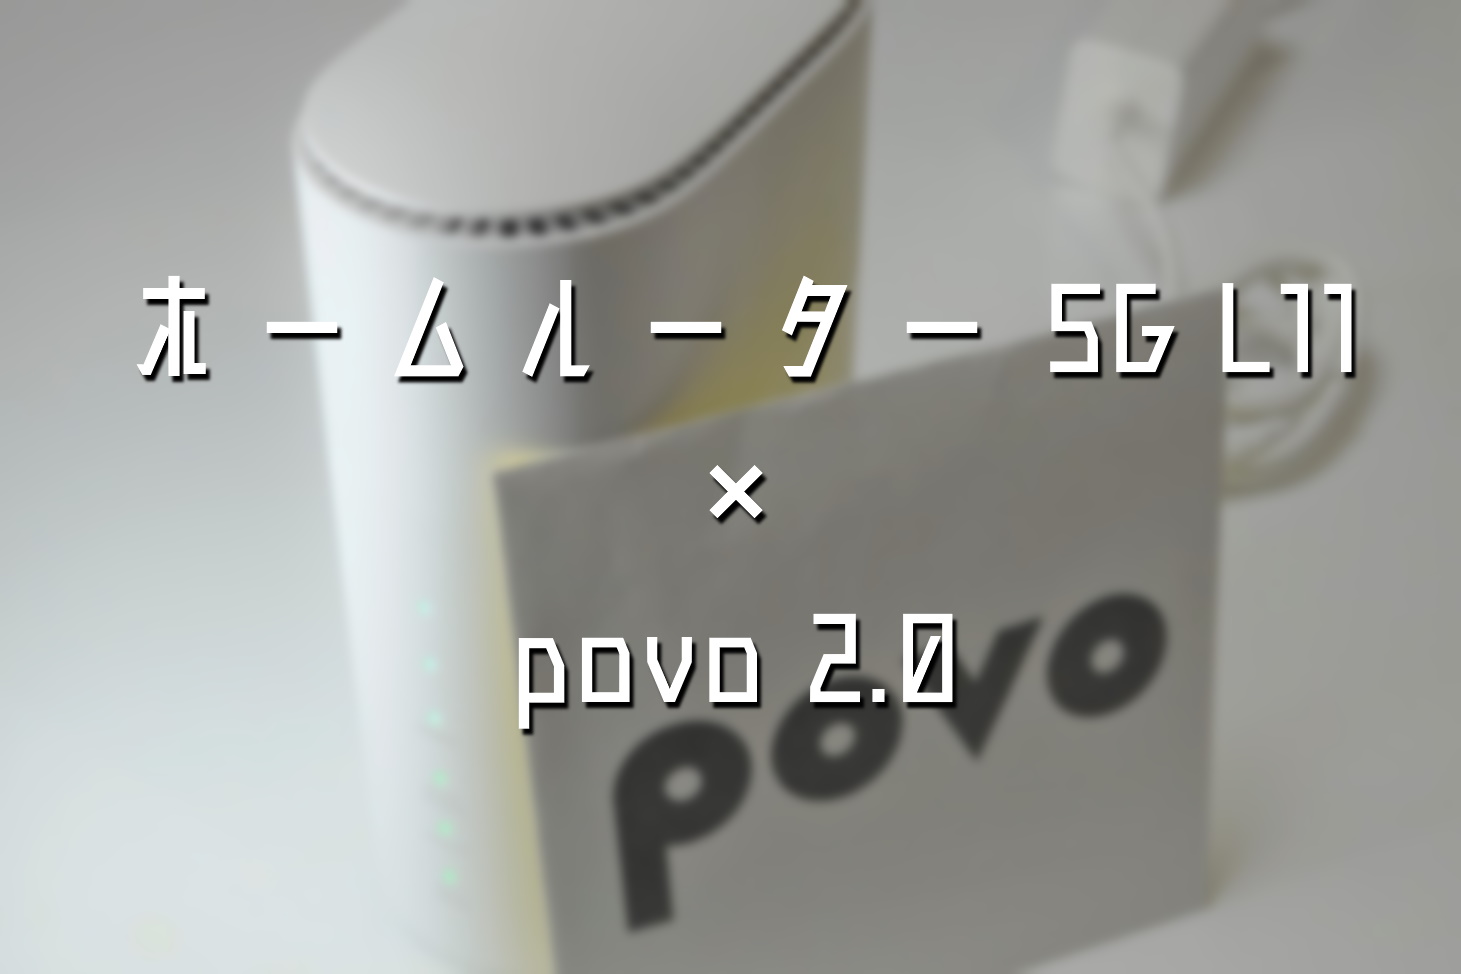 ホームルーター5G L11にpovo 2.0を導入